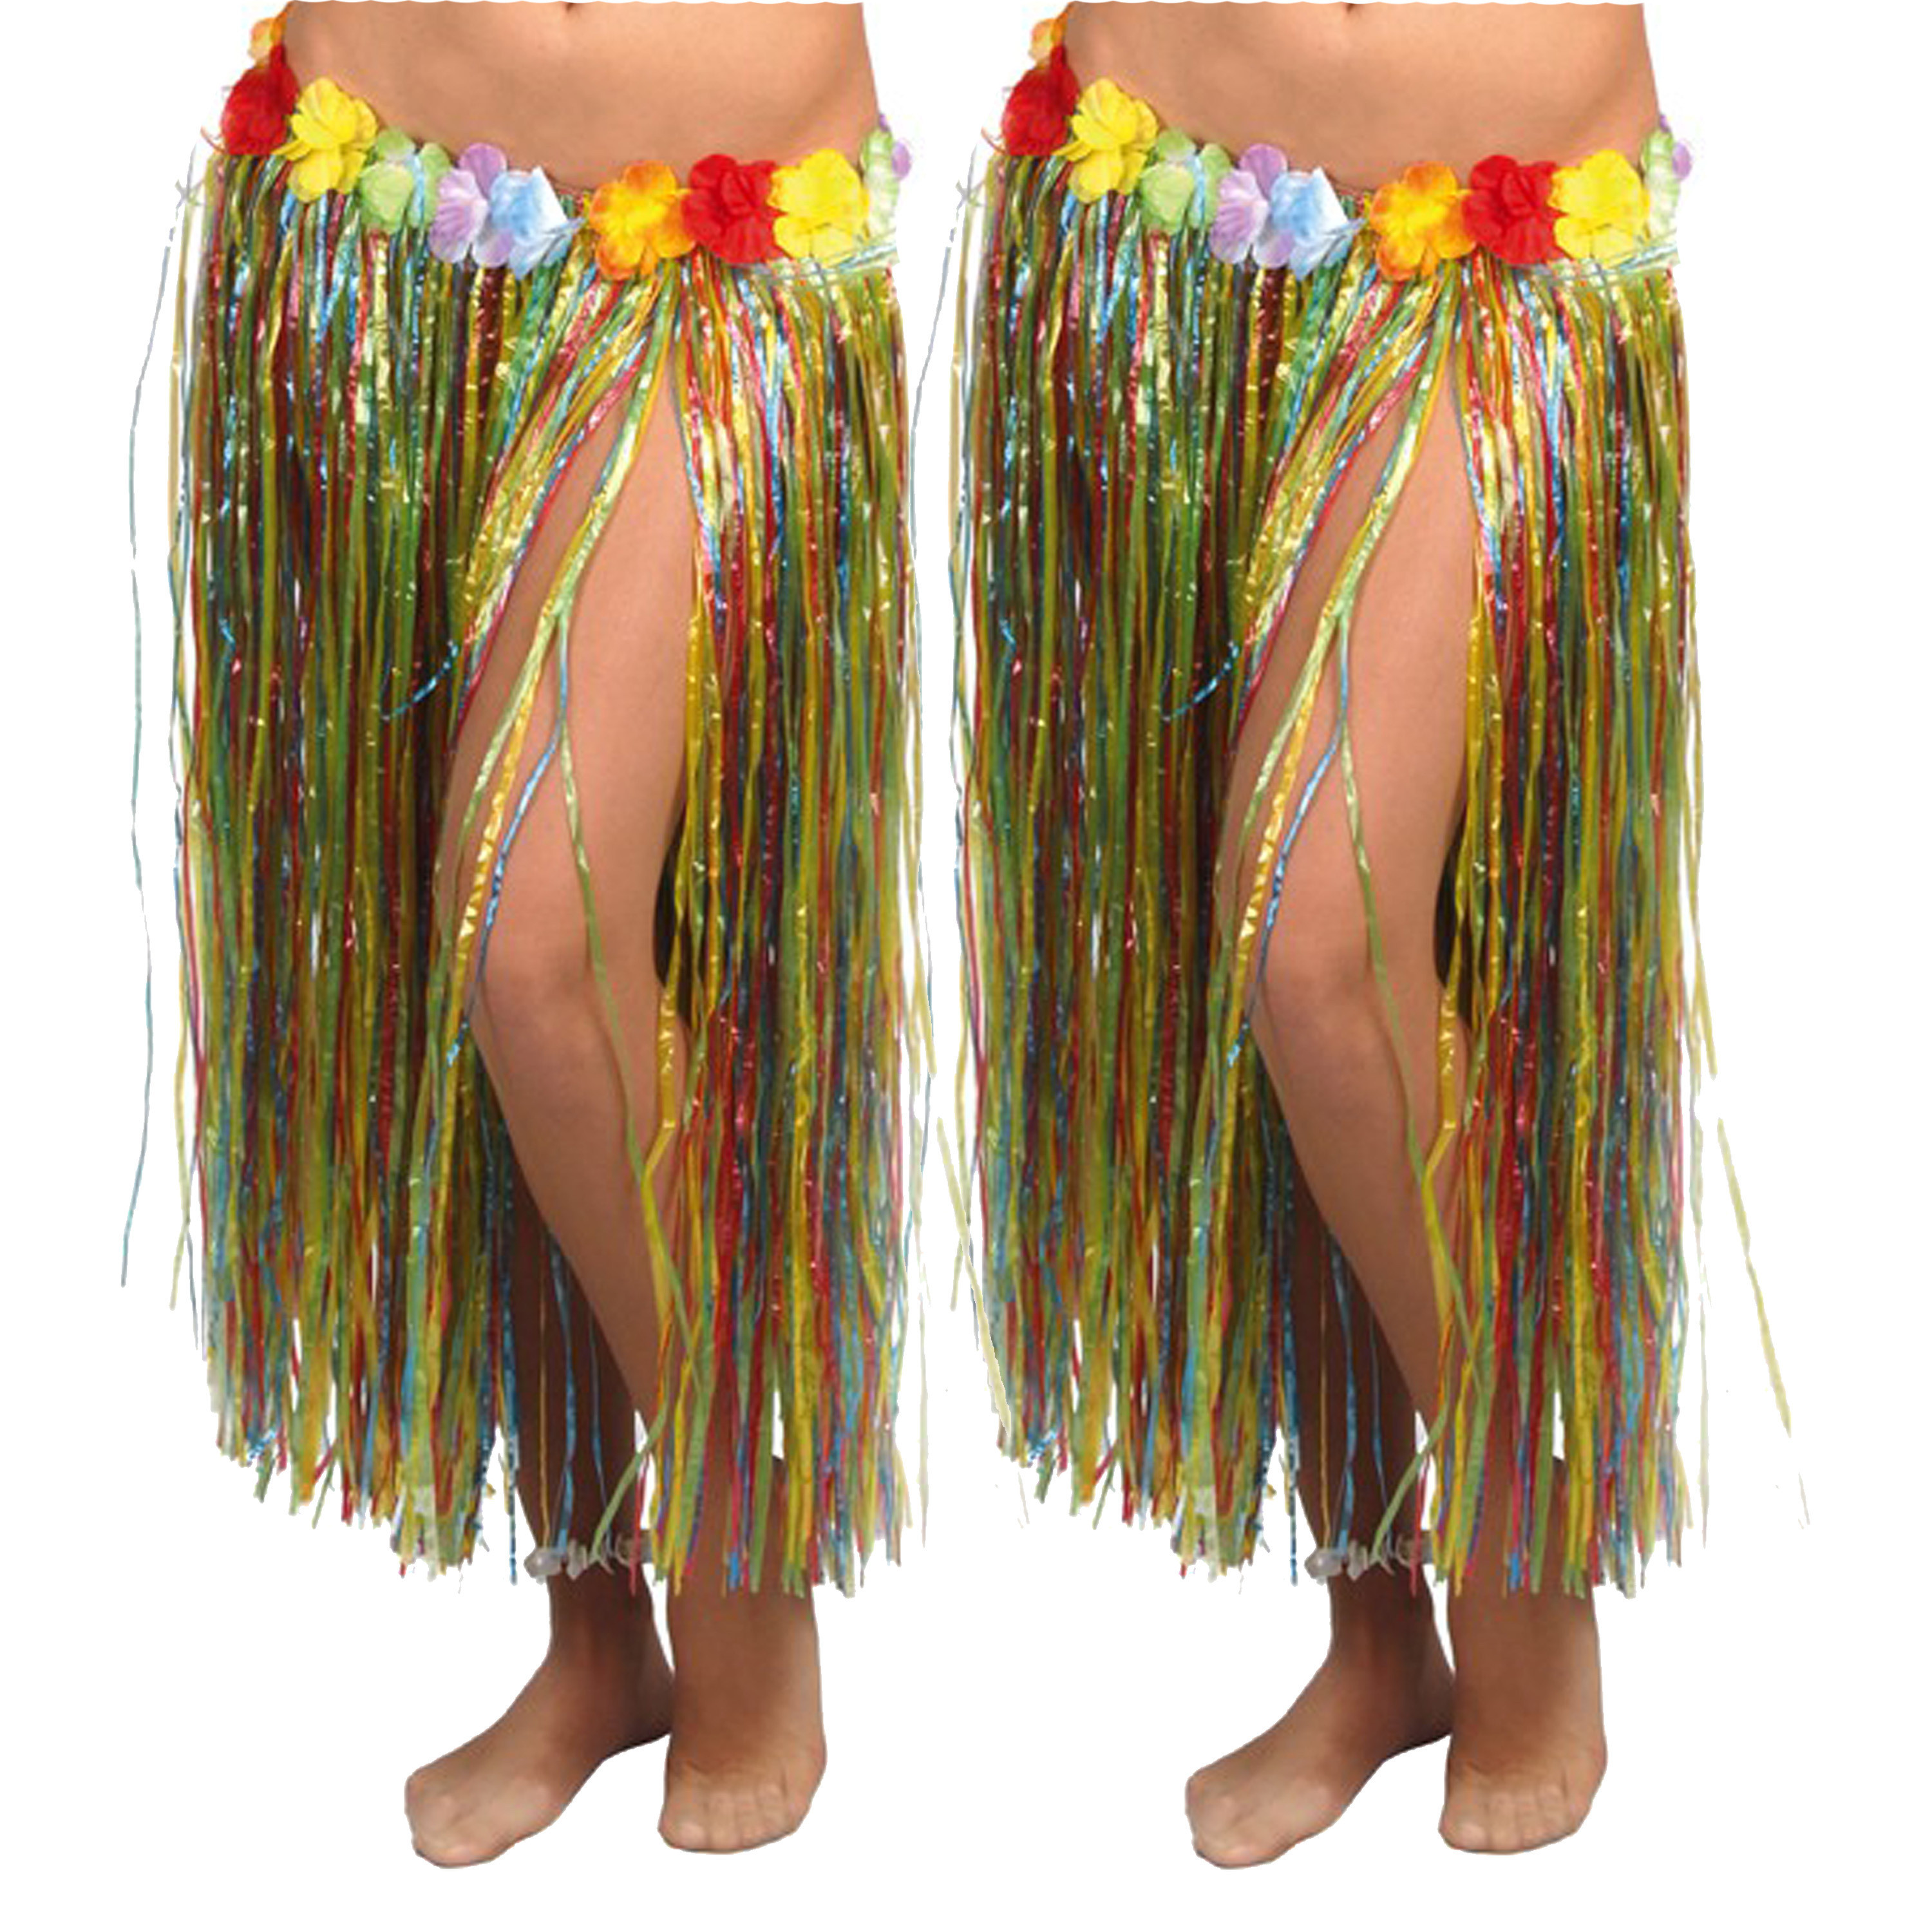 Hawaii verkleed rokje - 2x - voor volwassenen - multicolour - 75 cm - rieten hoela rokje - tropisch